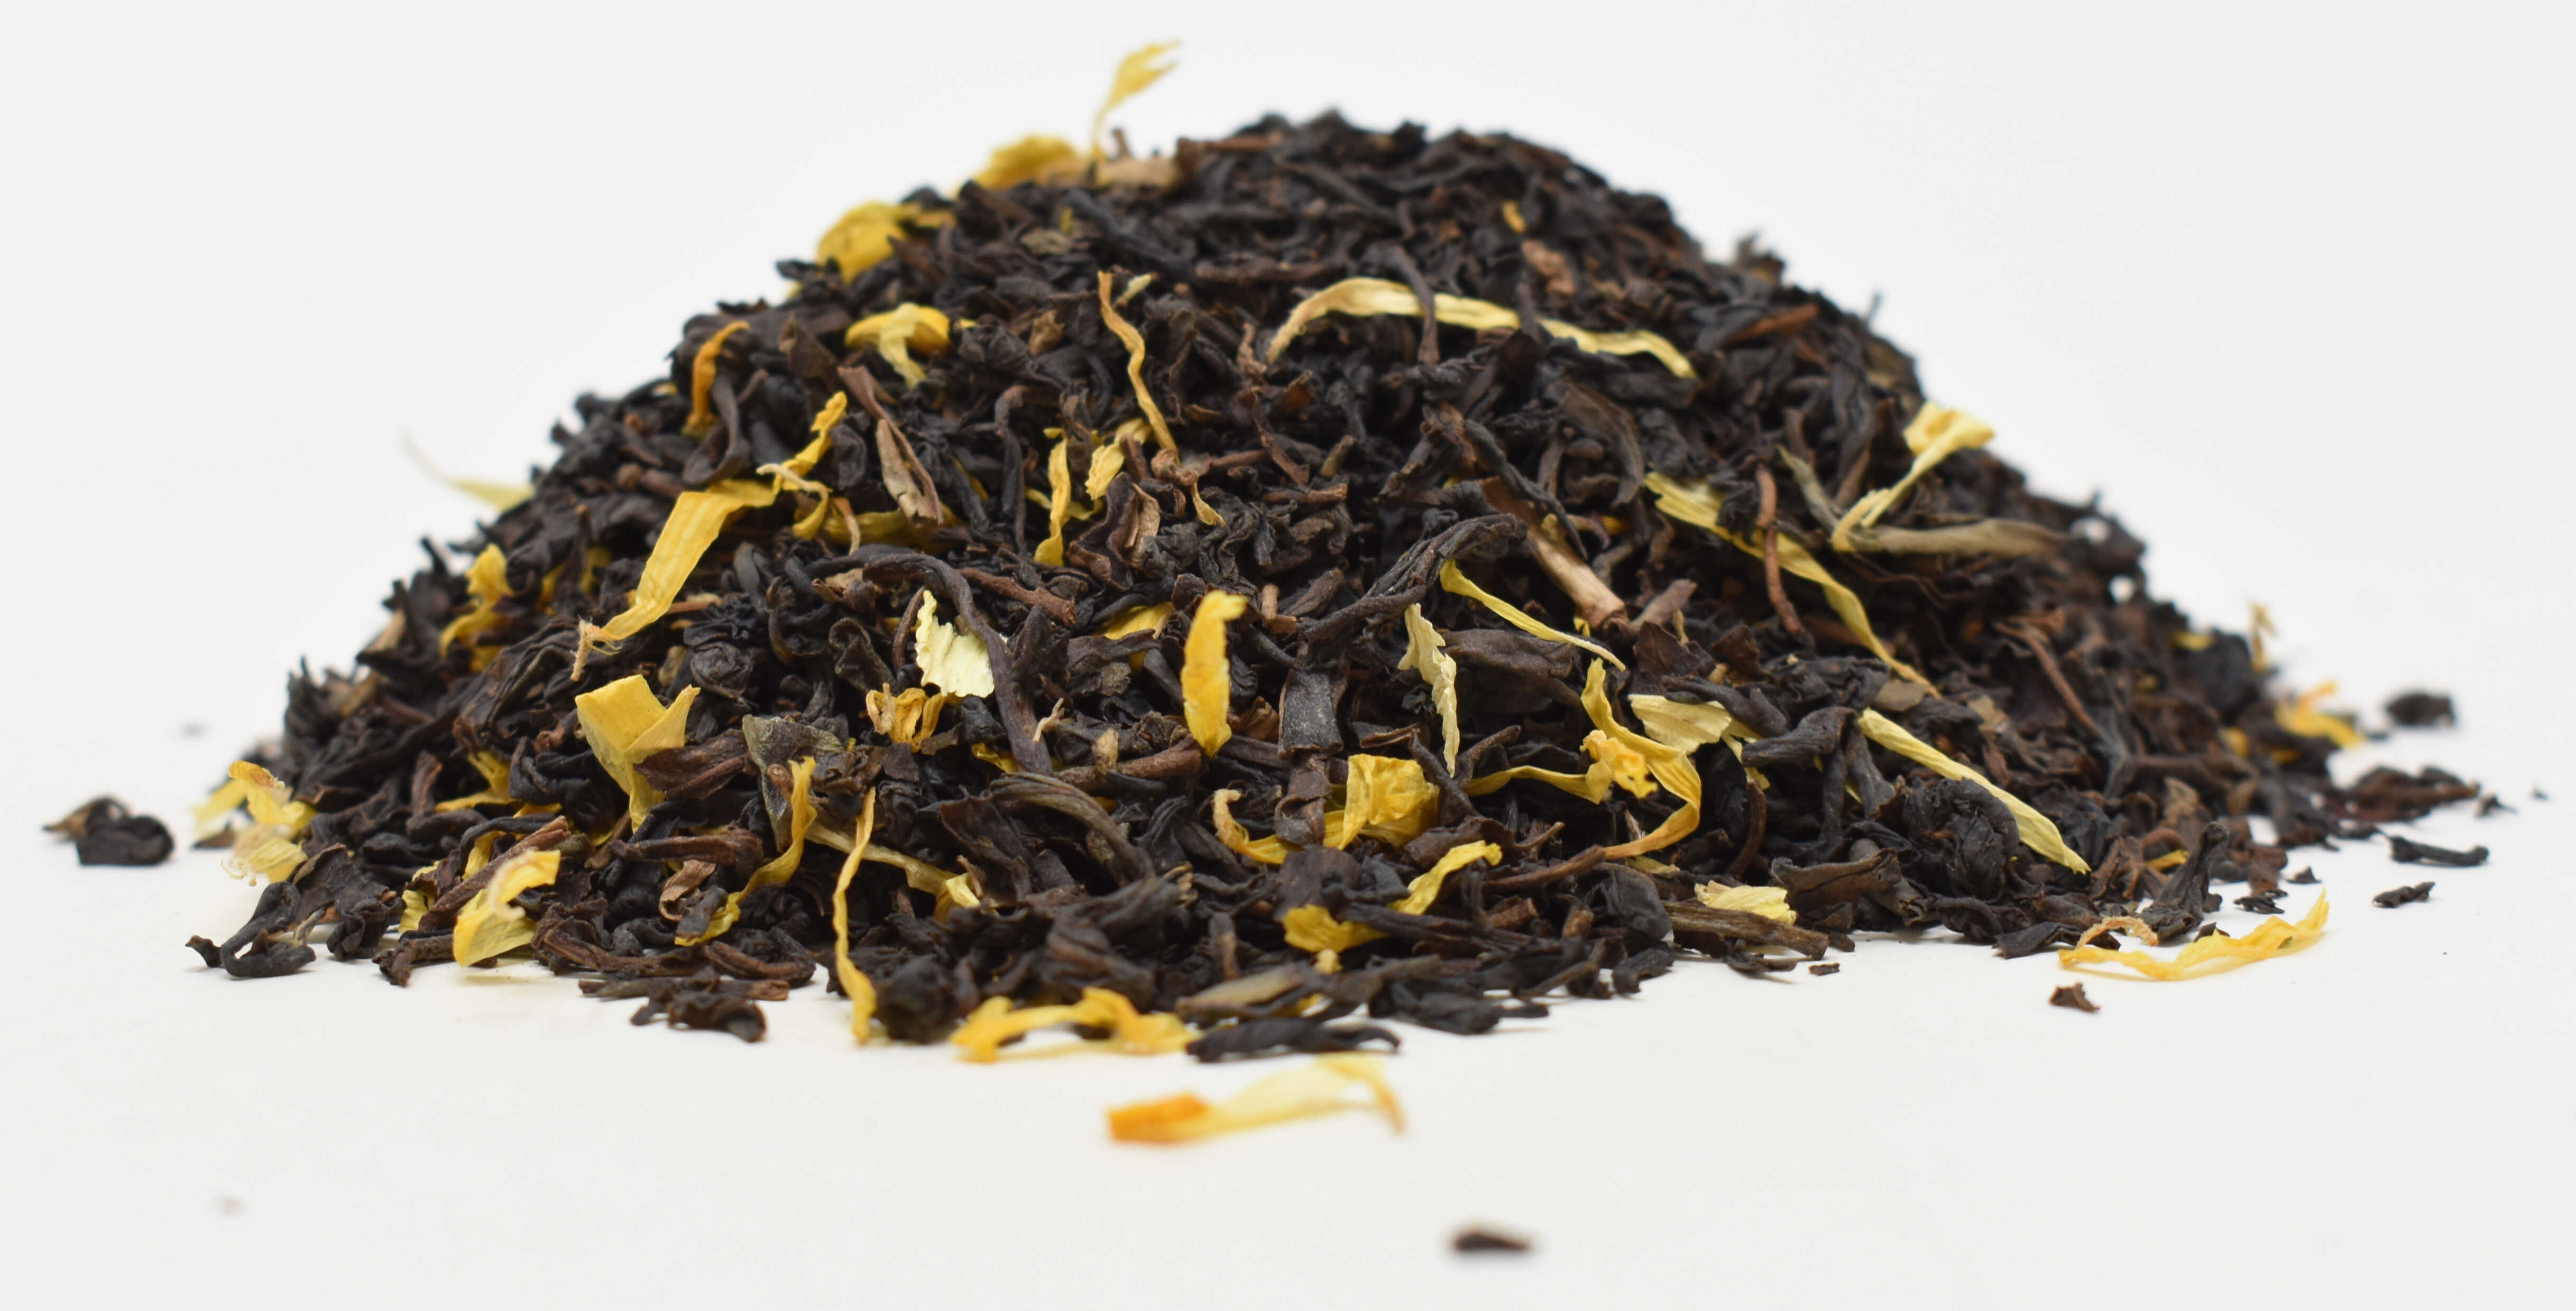 Monk's Blend Decaf Black Tea - Side Photo